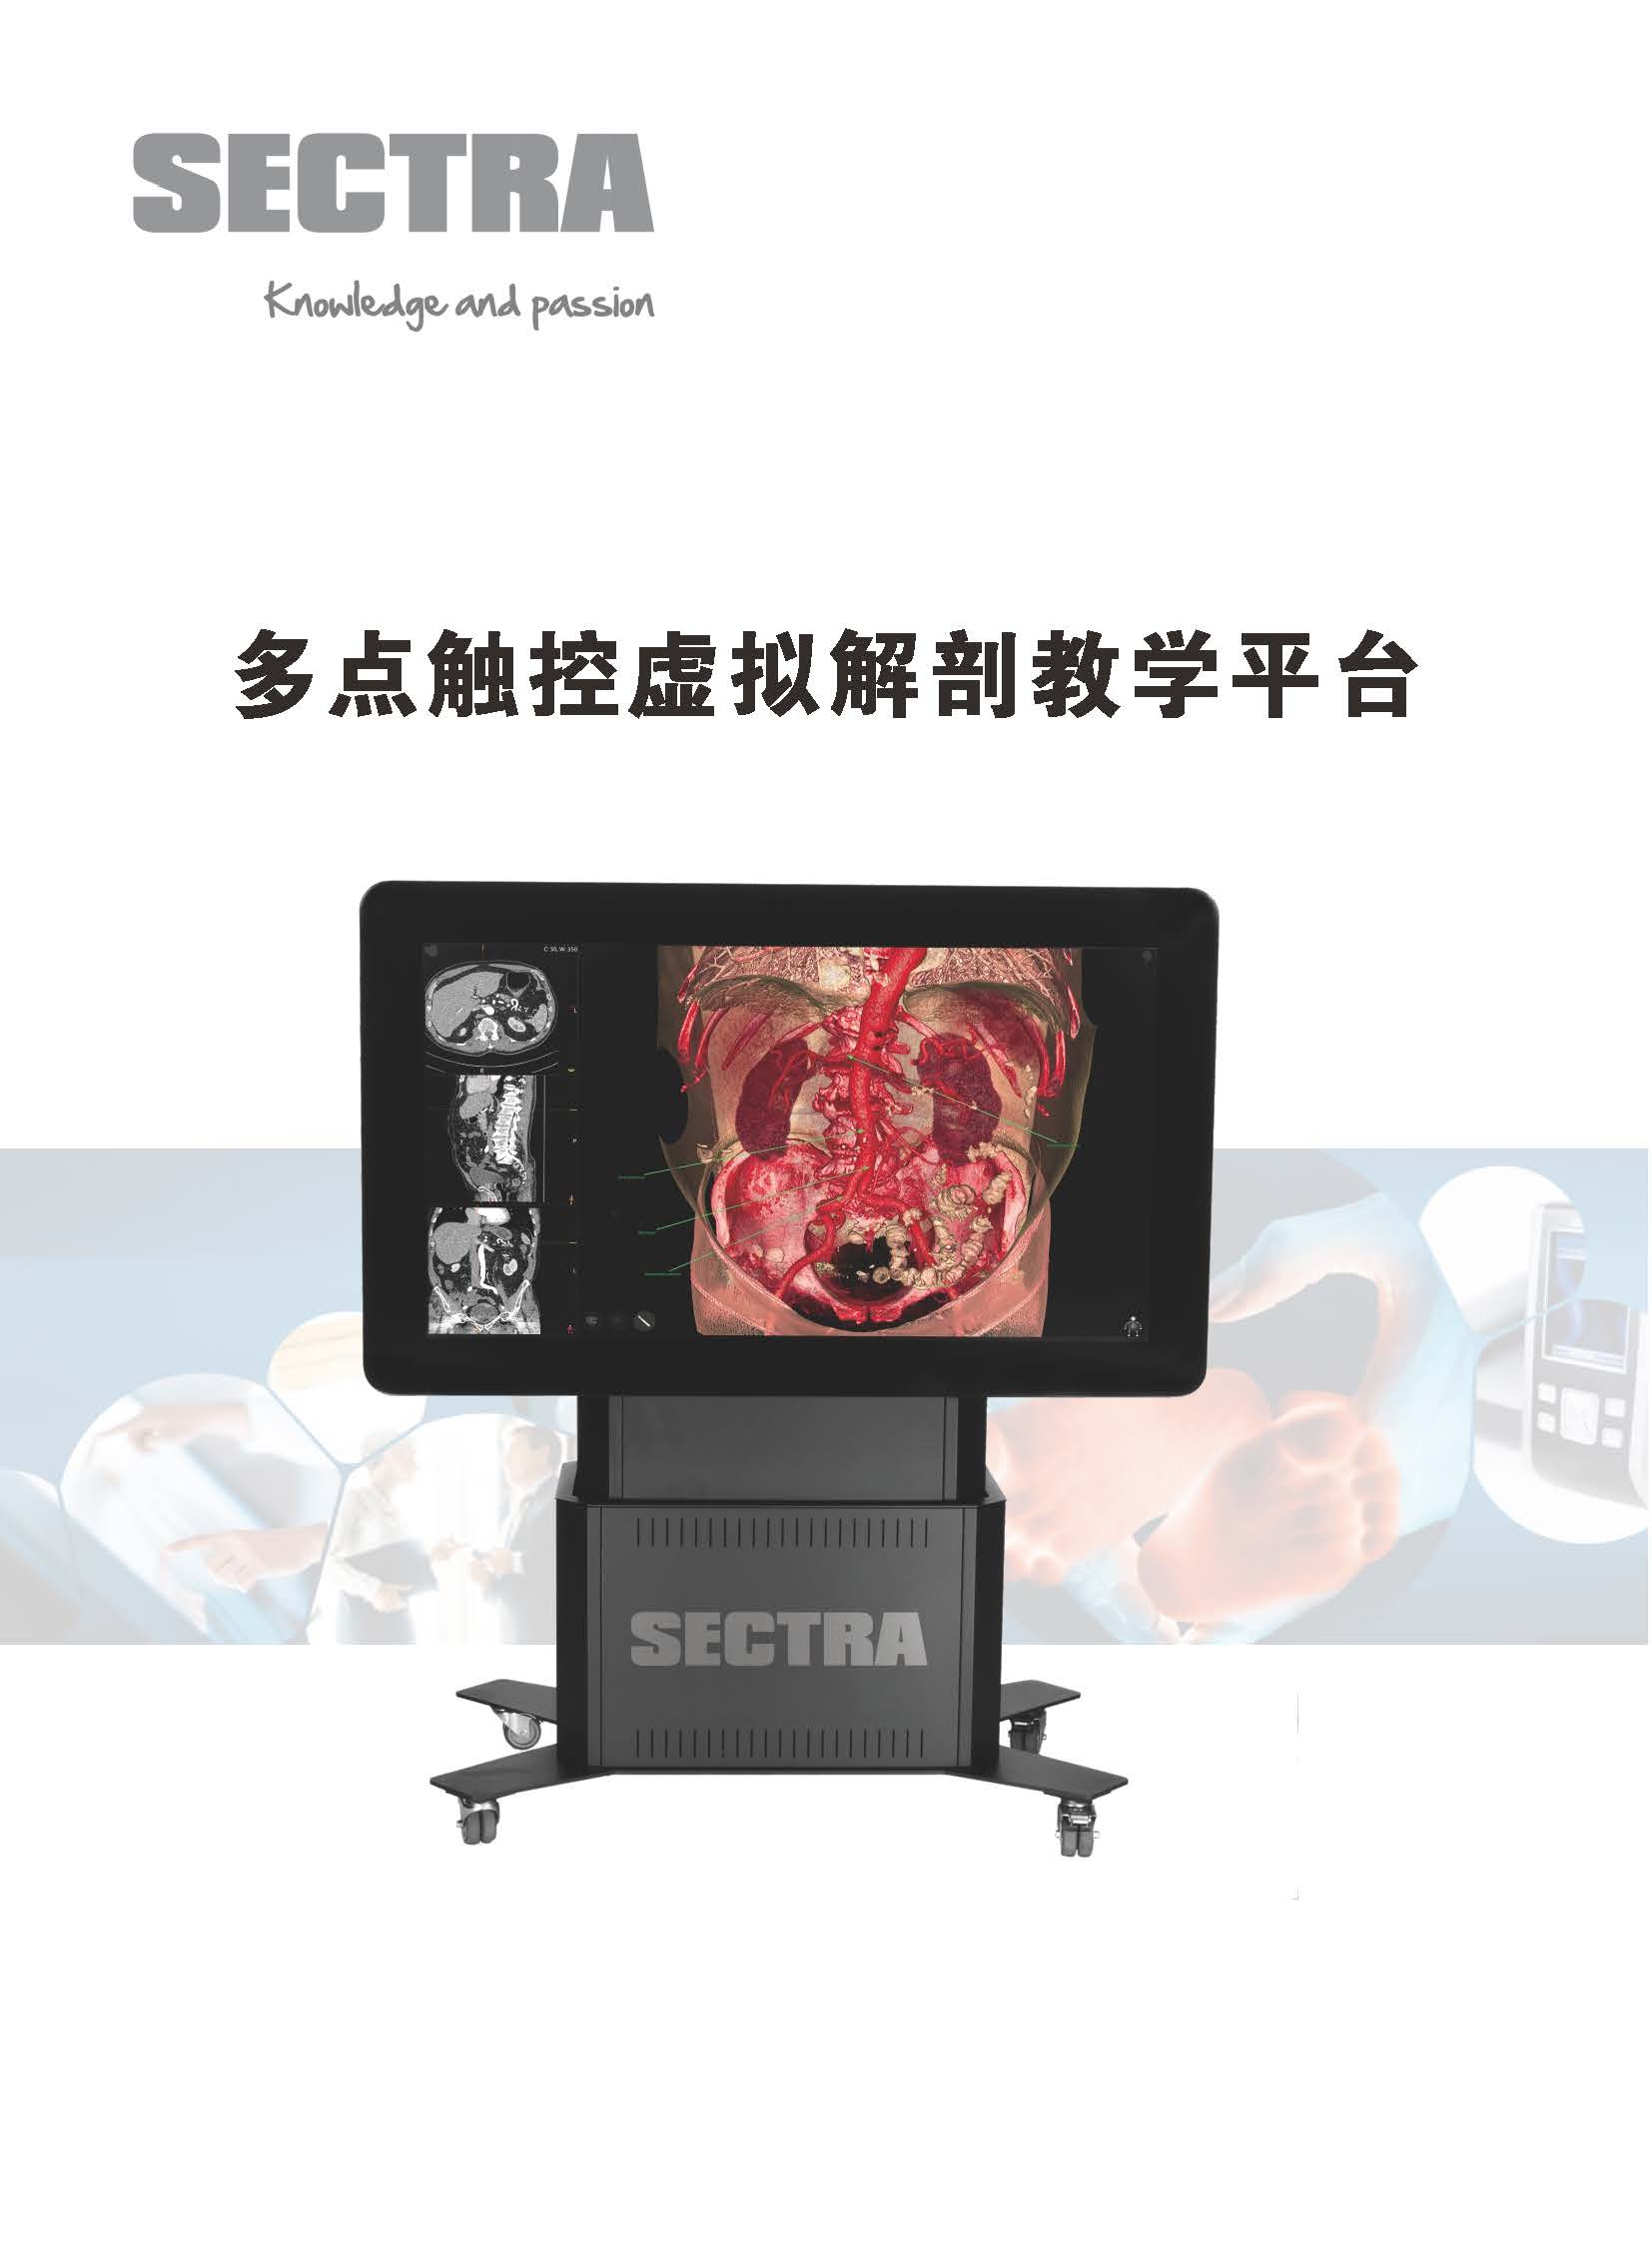 多点触控虚拟解剖教学平台官网用_页面_1.jpg